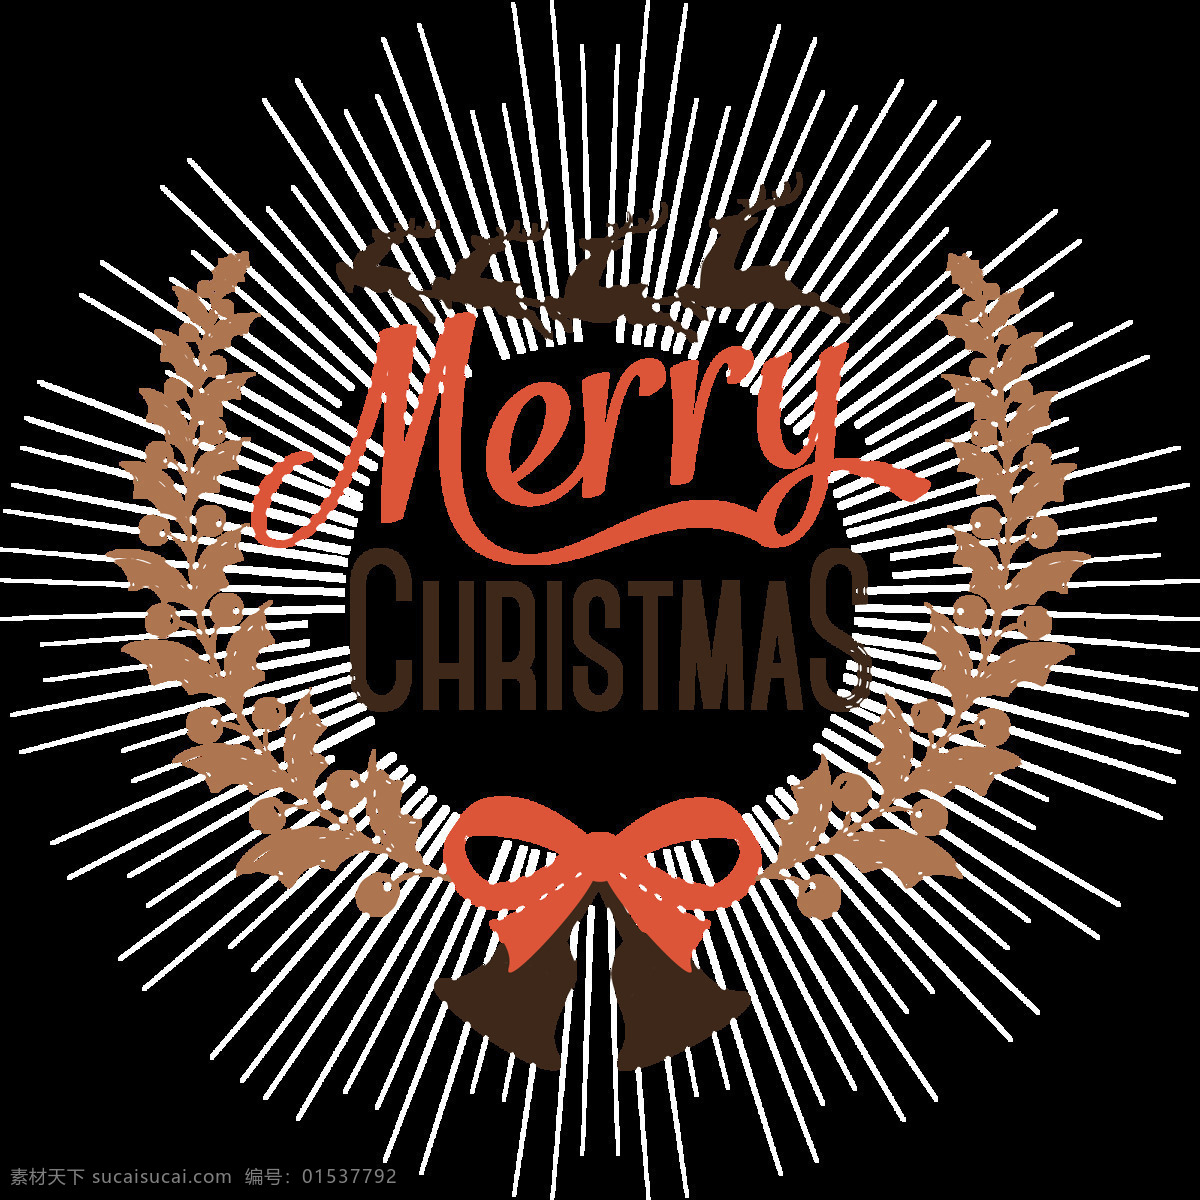 圣诞 主题 装饰 标签 元素 圣诞标签 装饰标签 圣诞铃铛 英文元素 抽象元素 抽象素材 卡通元素 装饰图案 圣诞快乐 设计素材 merry christmas